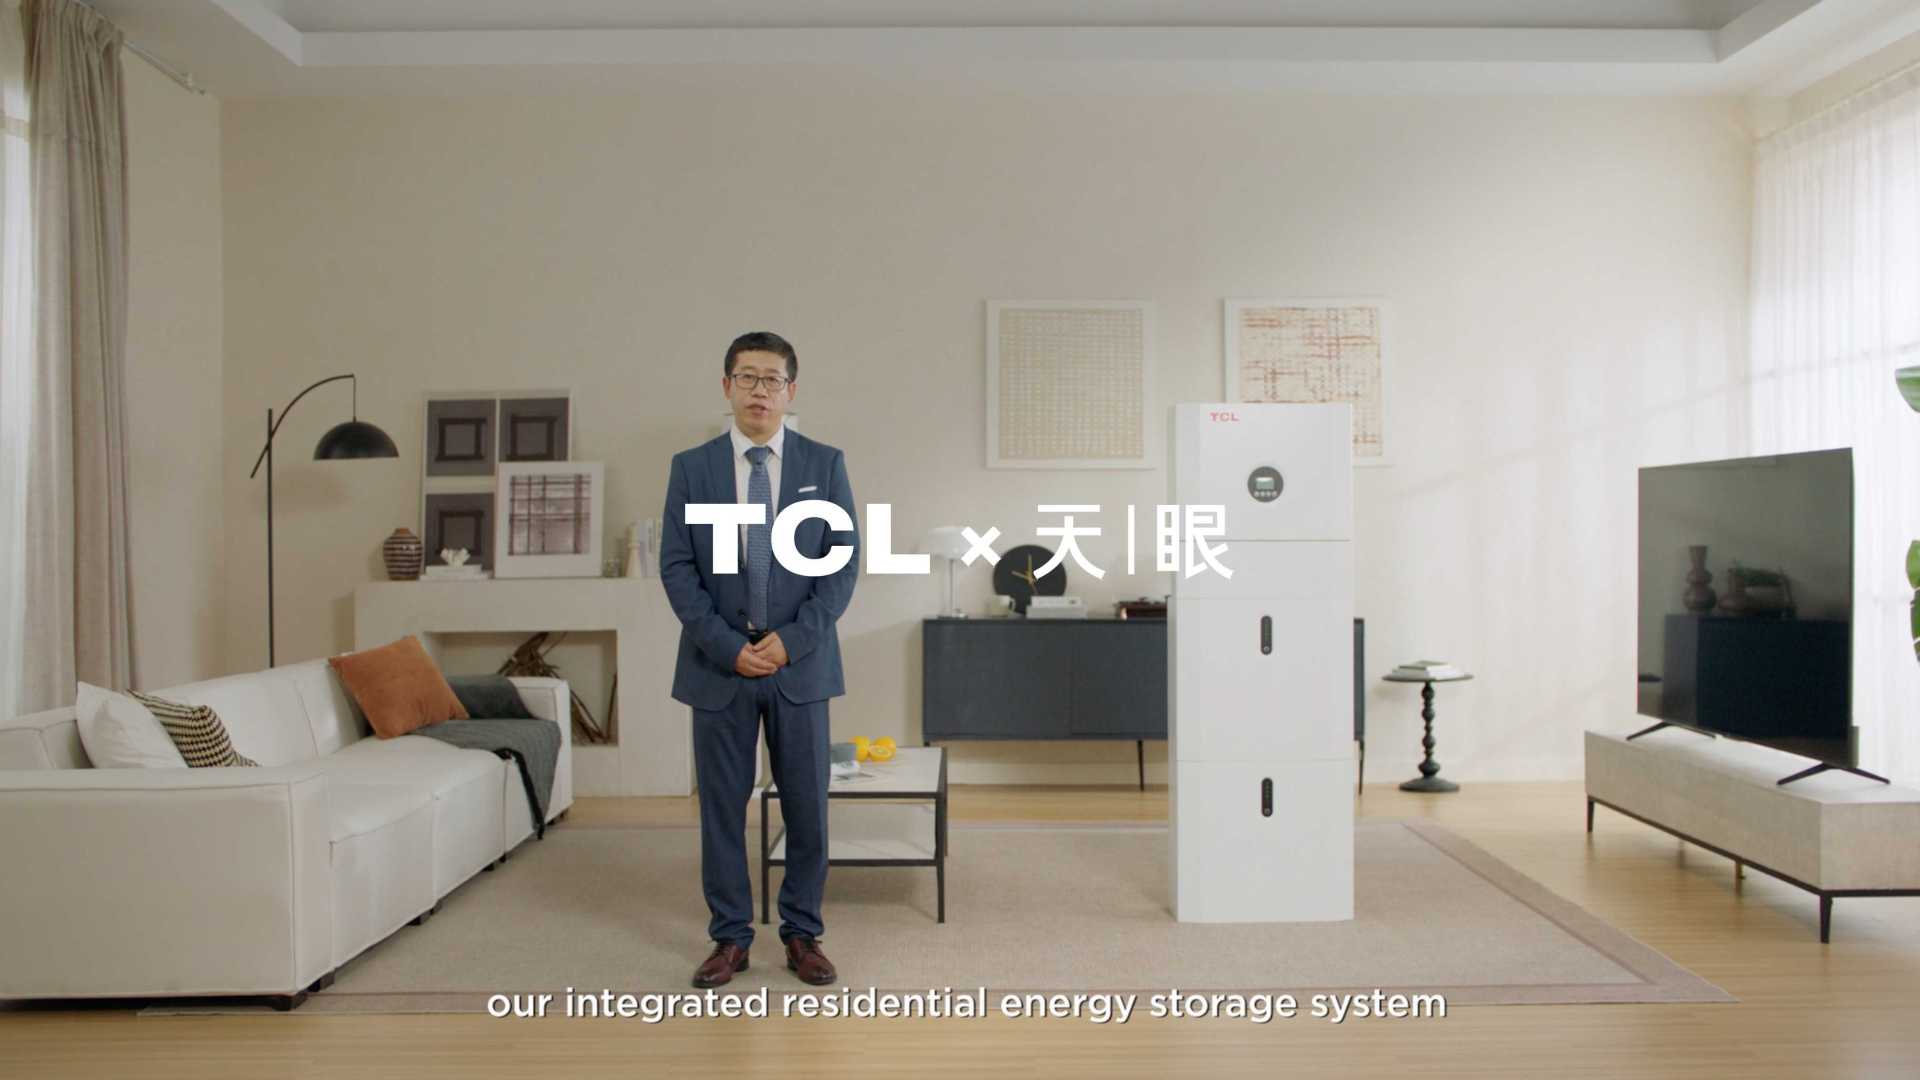 TCL光伏科技发布会演示-移动户储